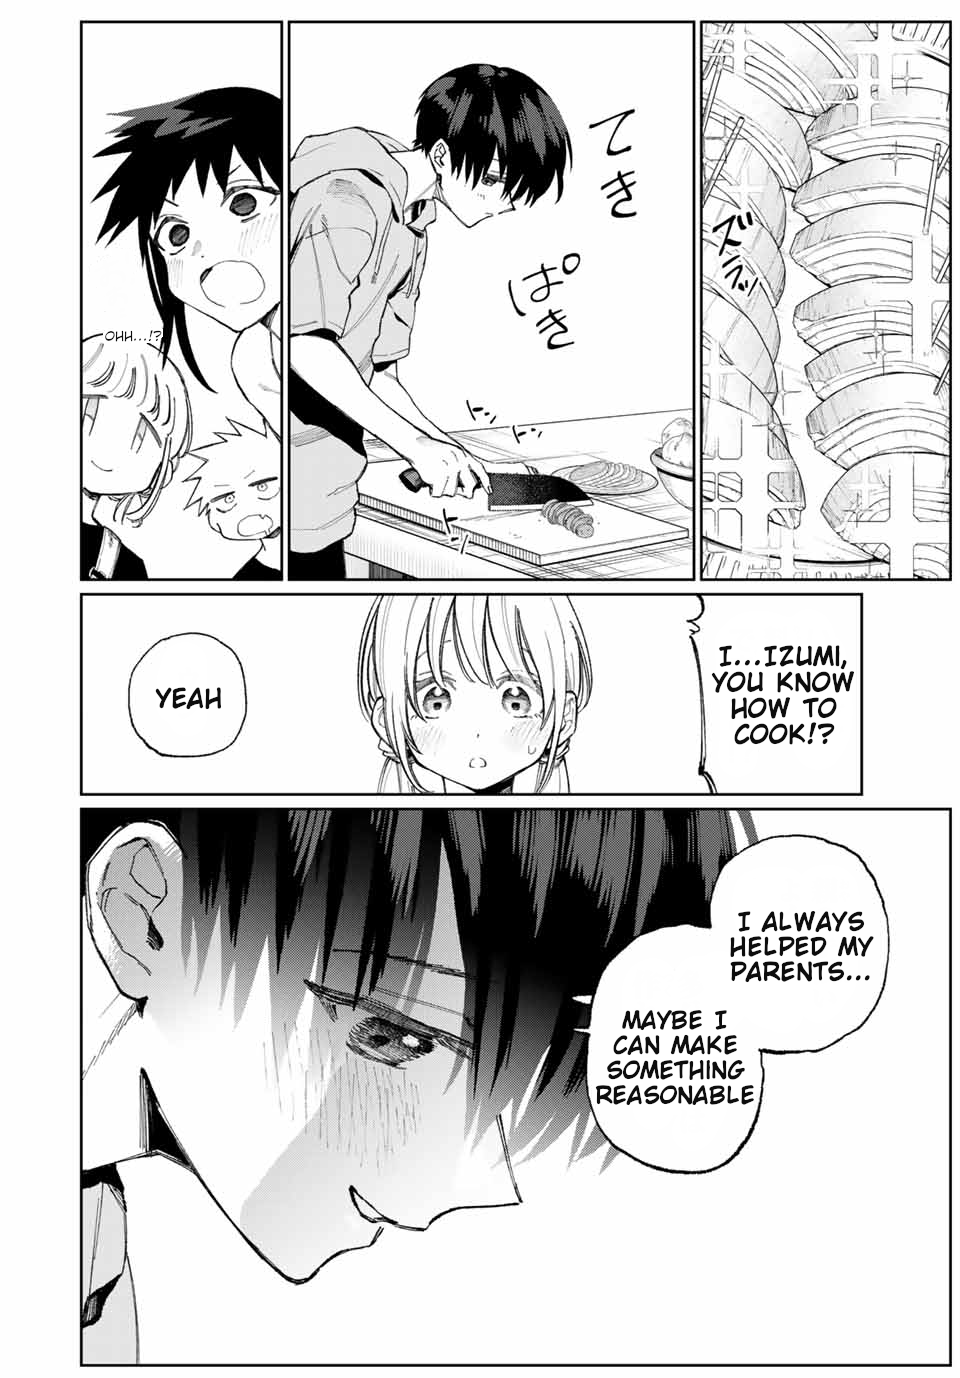 Shikimori's Not Just A Cutie - chapter 29 - #5